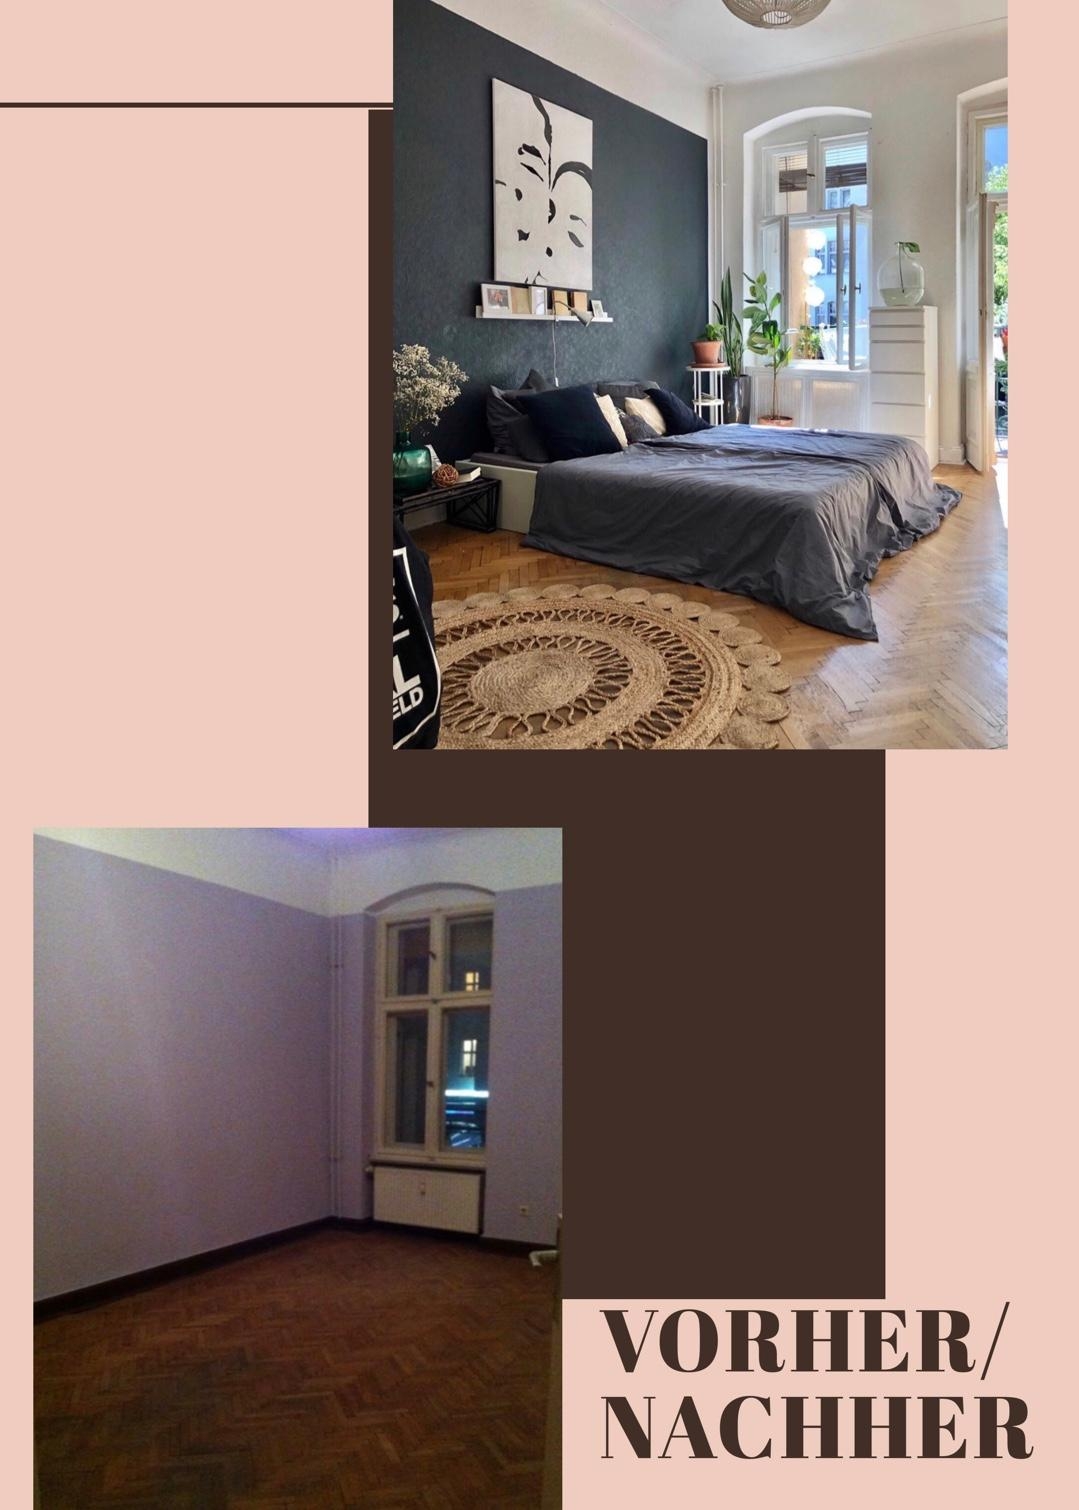 VORHER/NACHHER #schlafzimmer #vorhernachher #renovierung #altbau #holzboden 